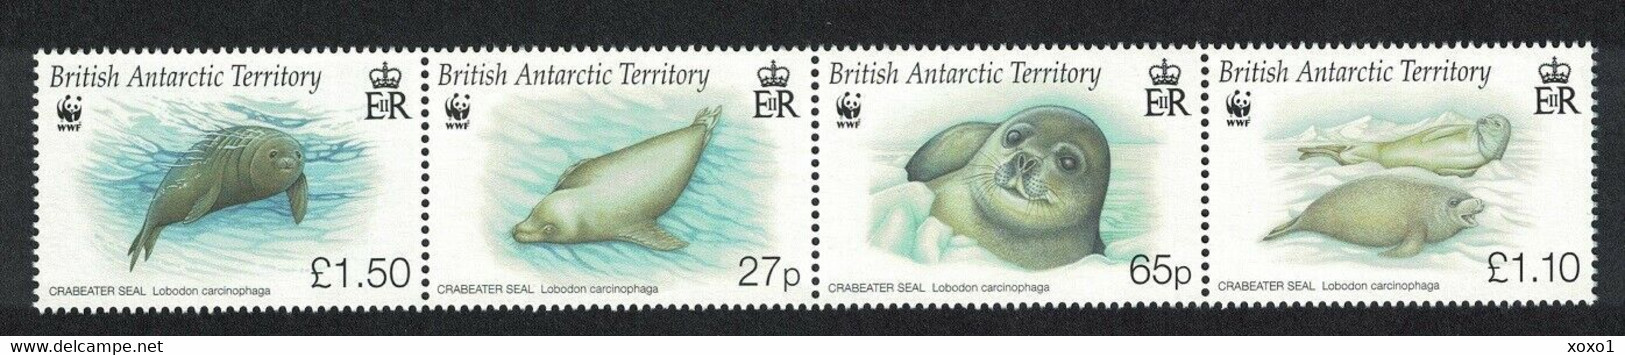 British Antarctic Territory (BAT) 2009 MiNr. 505 - 508 WWF Marine Life Crabeater Seal 4v  MNH**  20.00 € - Ungebraucht